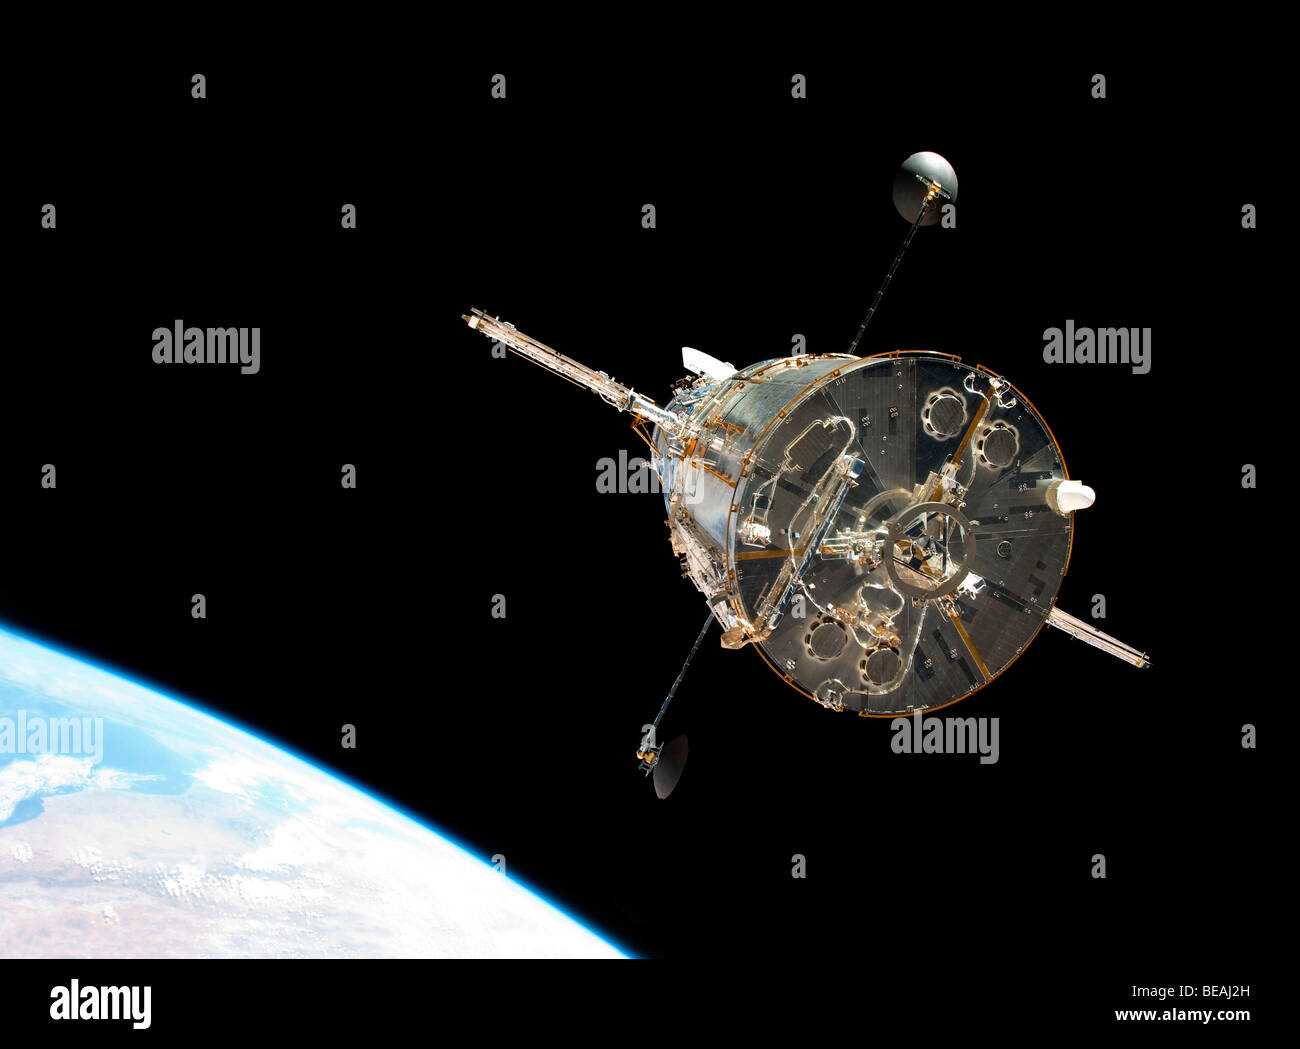 Telescopio Spaziale Hubble nel 2009 dopo essere stato ristrutturato. Ottimizzato e la versione avanzata di un originale immagine della NASA. Credit NASA Foto Stock